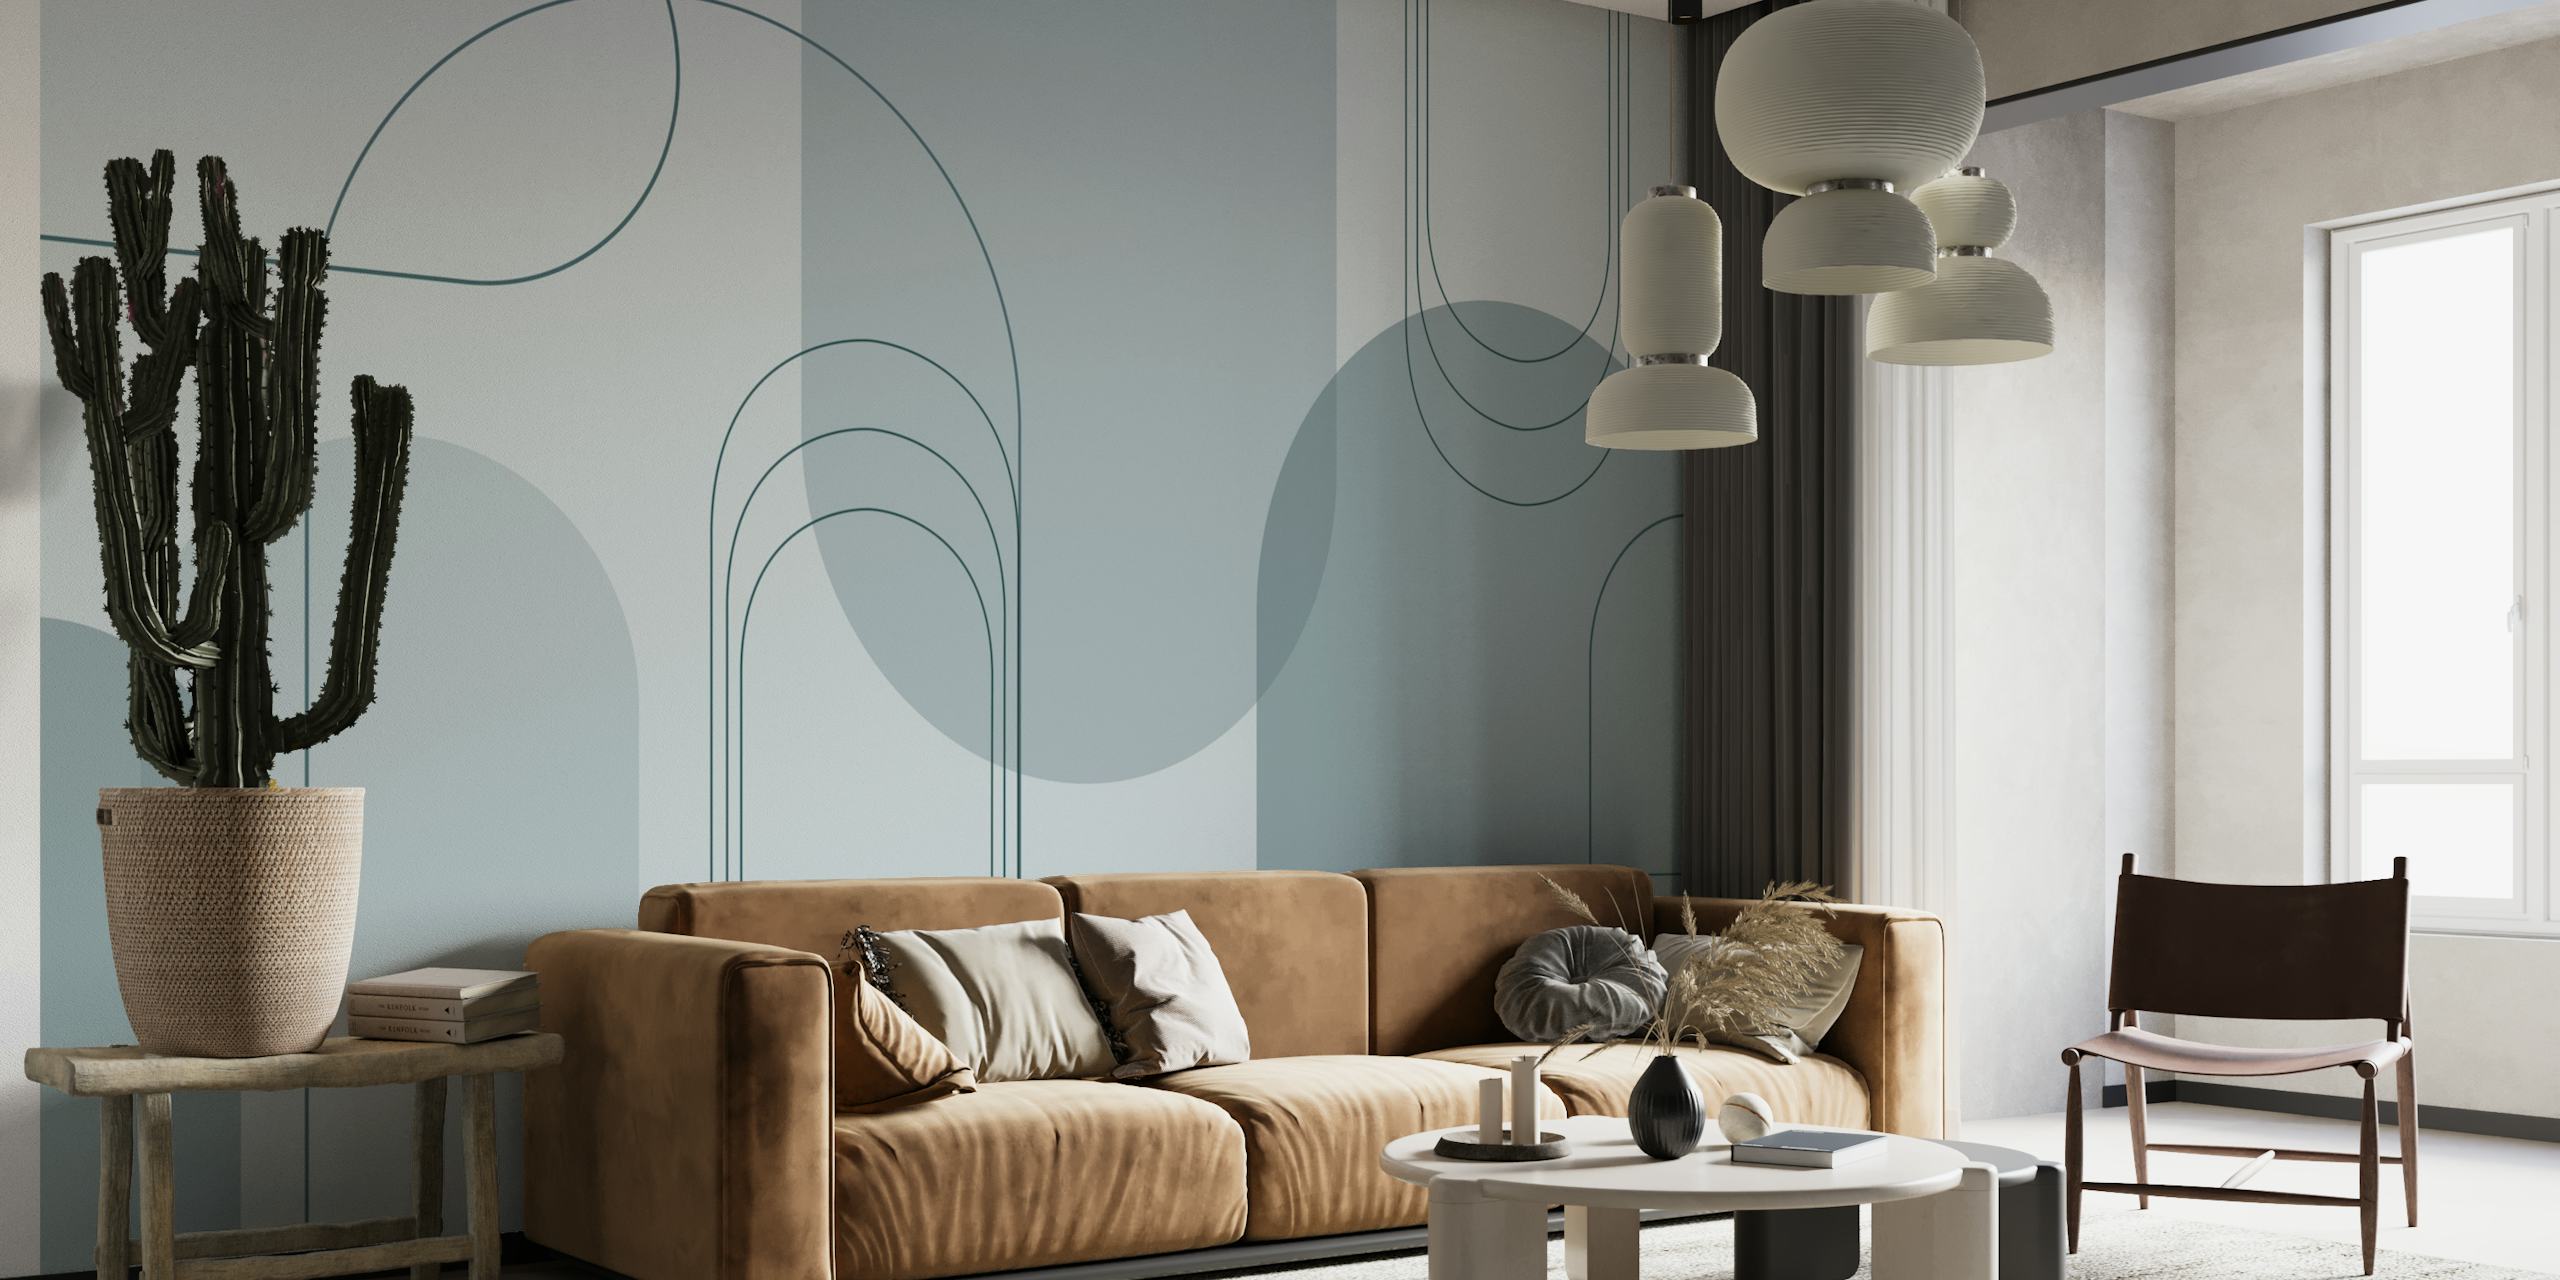 Fotomural de arcos minimalistas en tonos gris azulado con motivos semicirculares superpuestos.